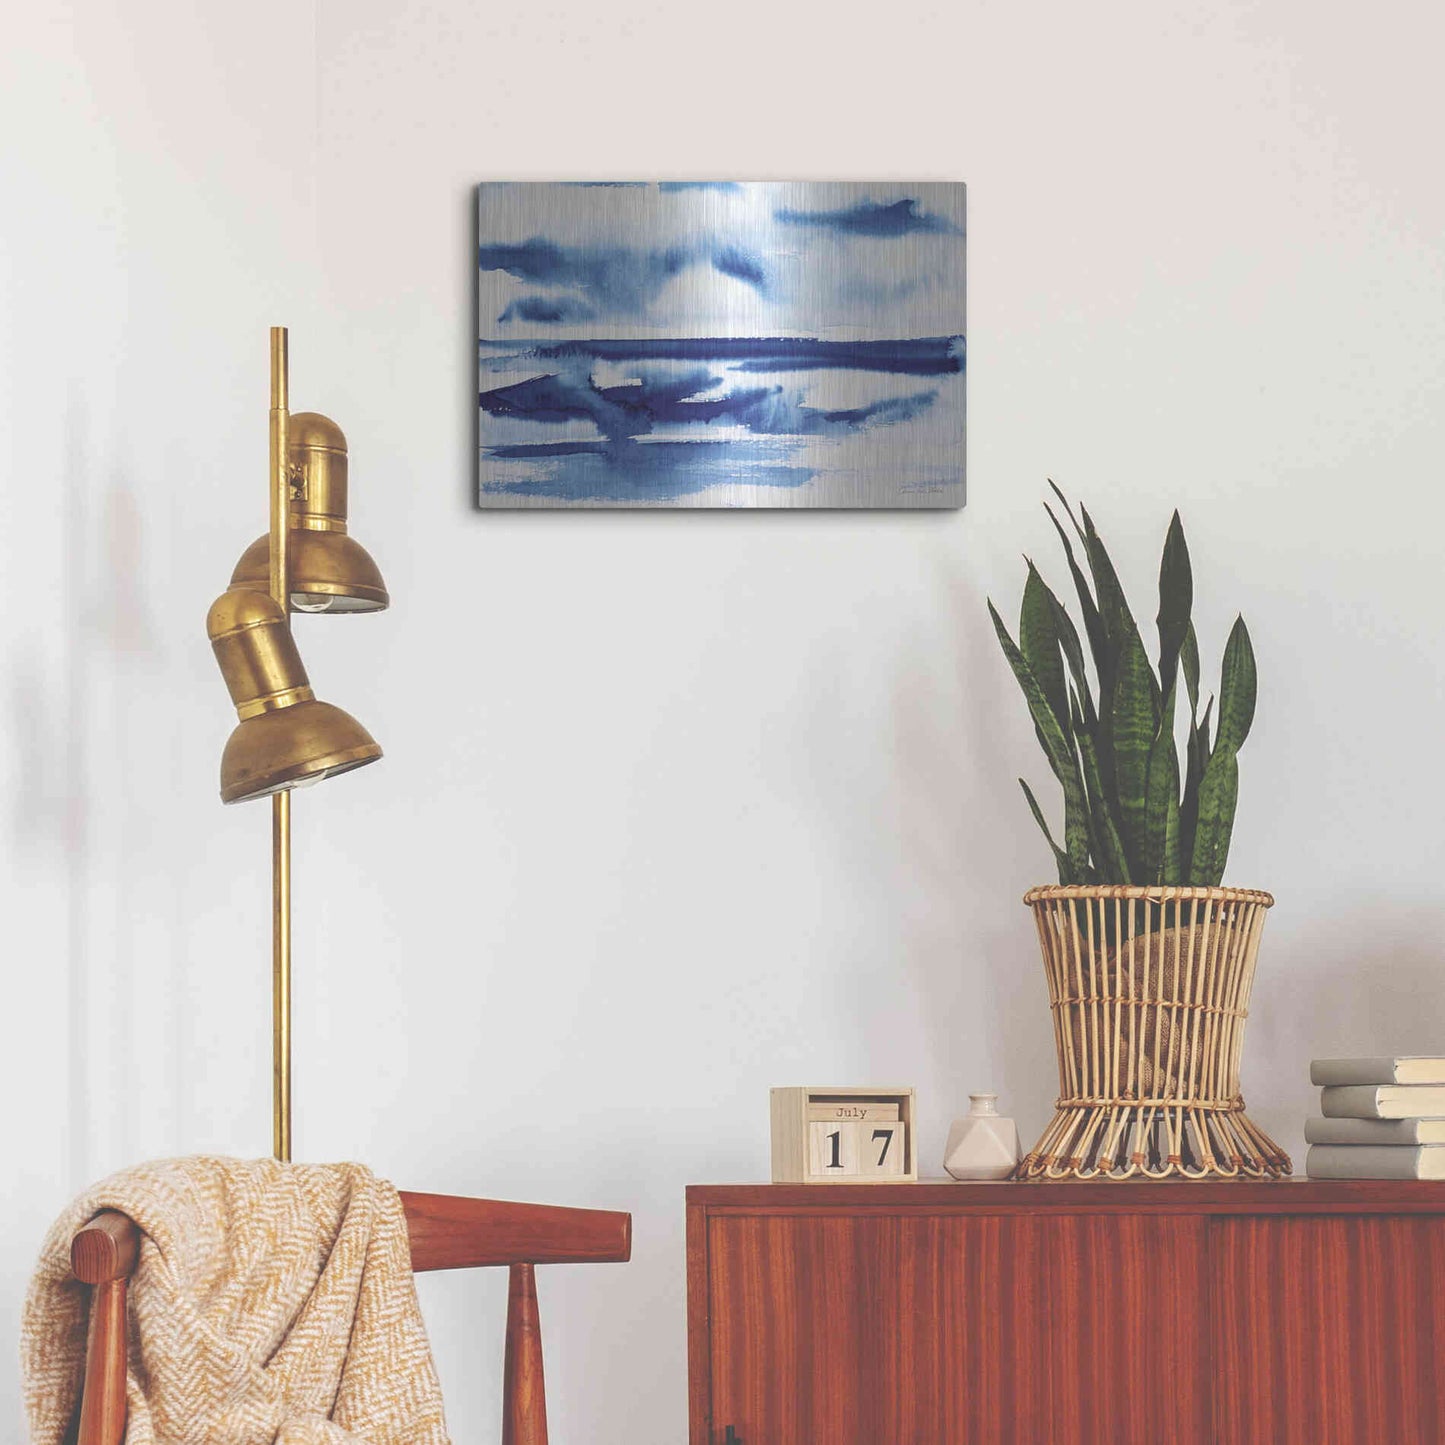 Luxe Metal Art 'Ocean Blue II' by Alan Majchrowicz, Metal Wall Art,24x16